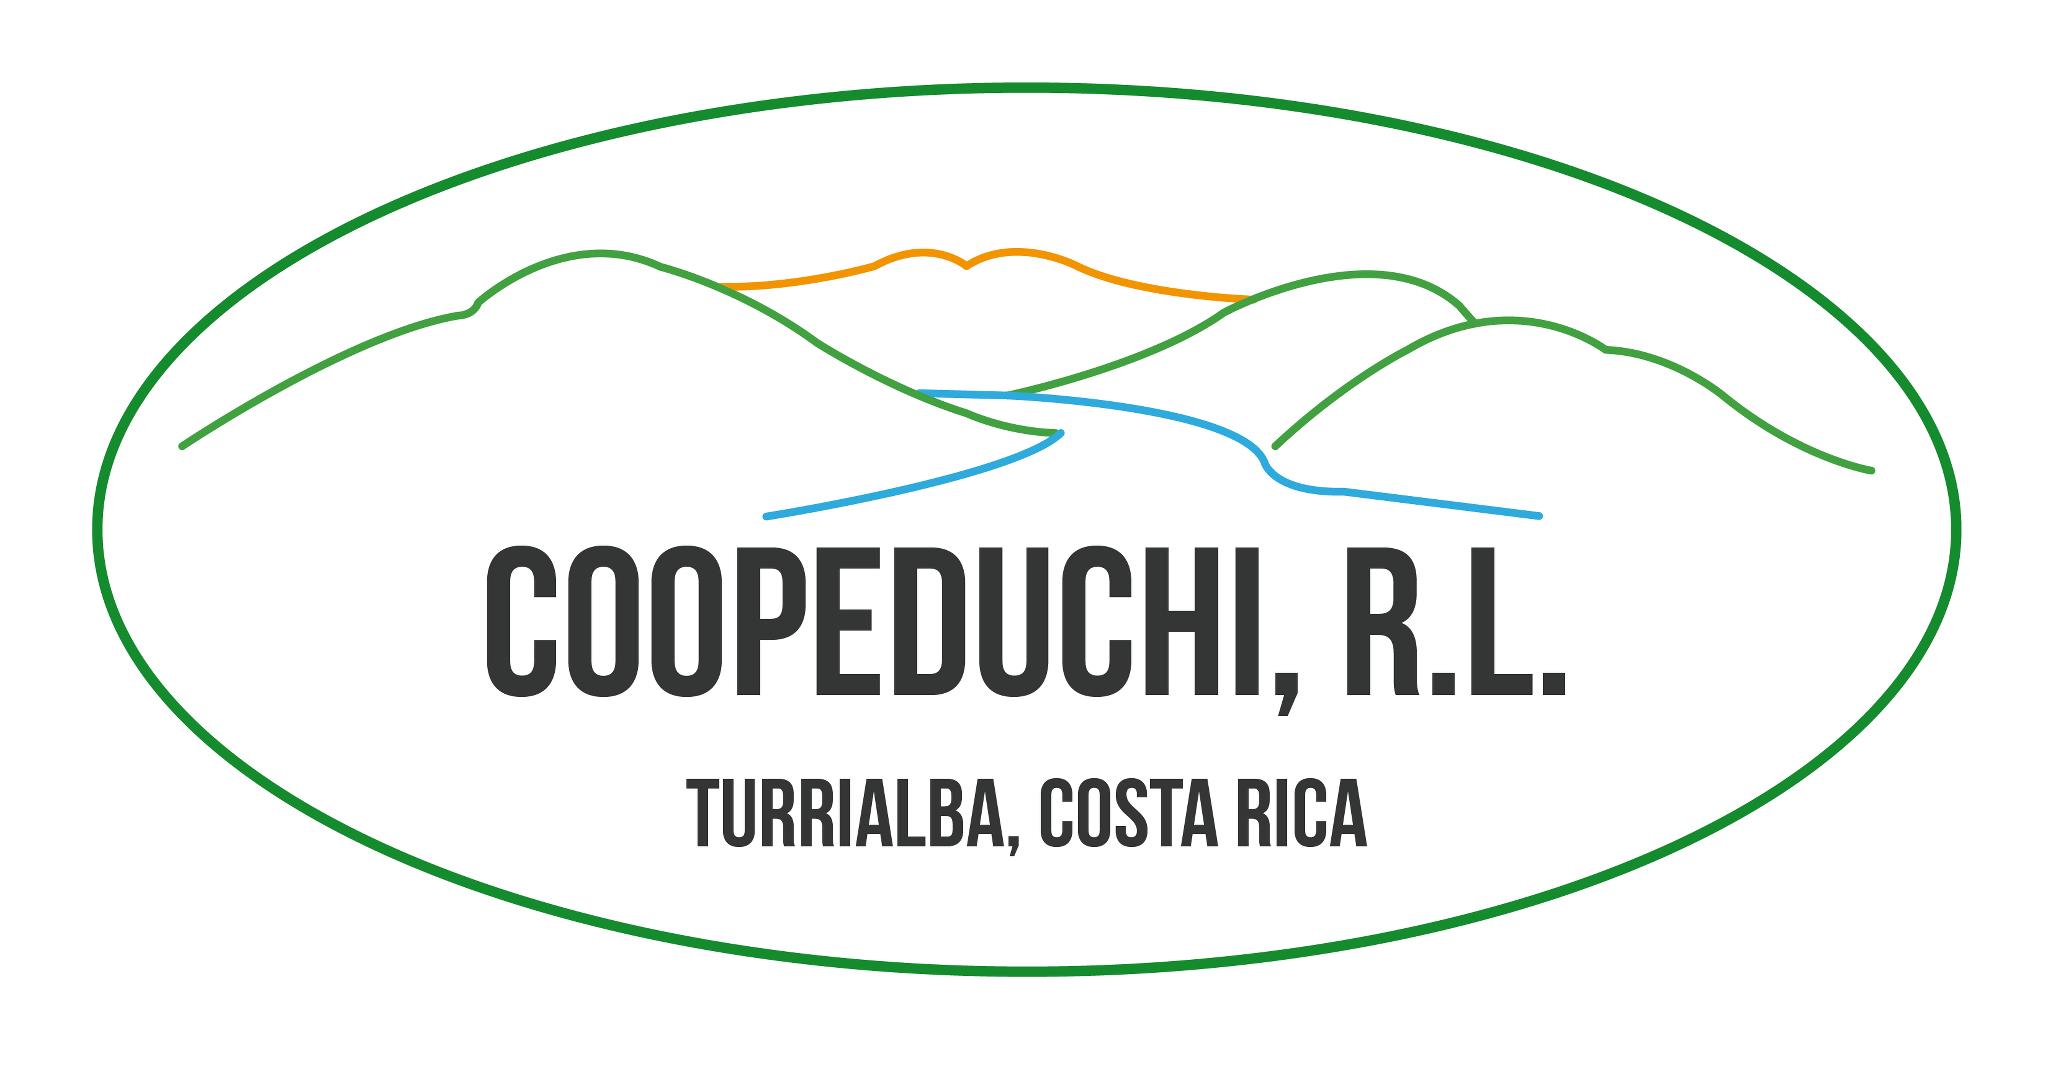 COOPEDUCHI R.L.